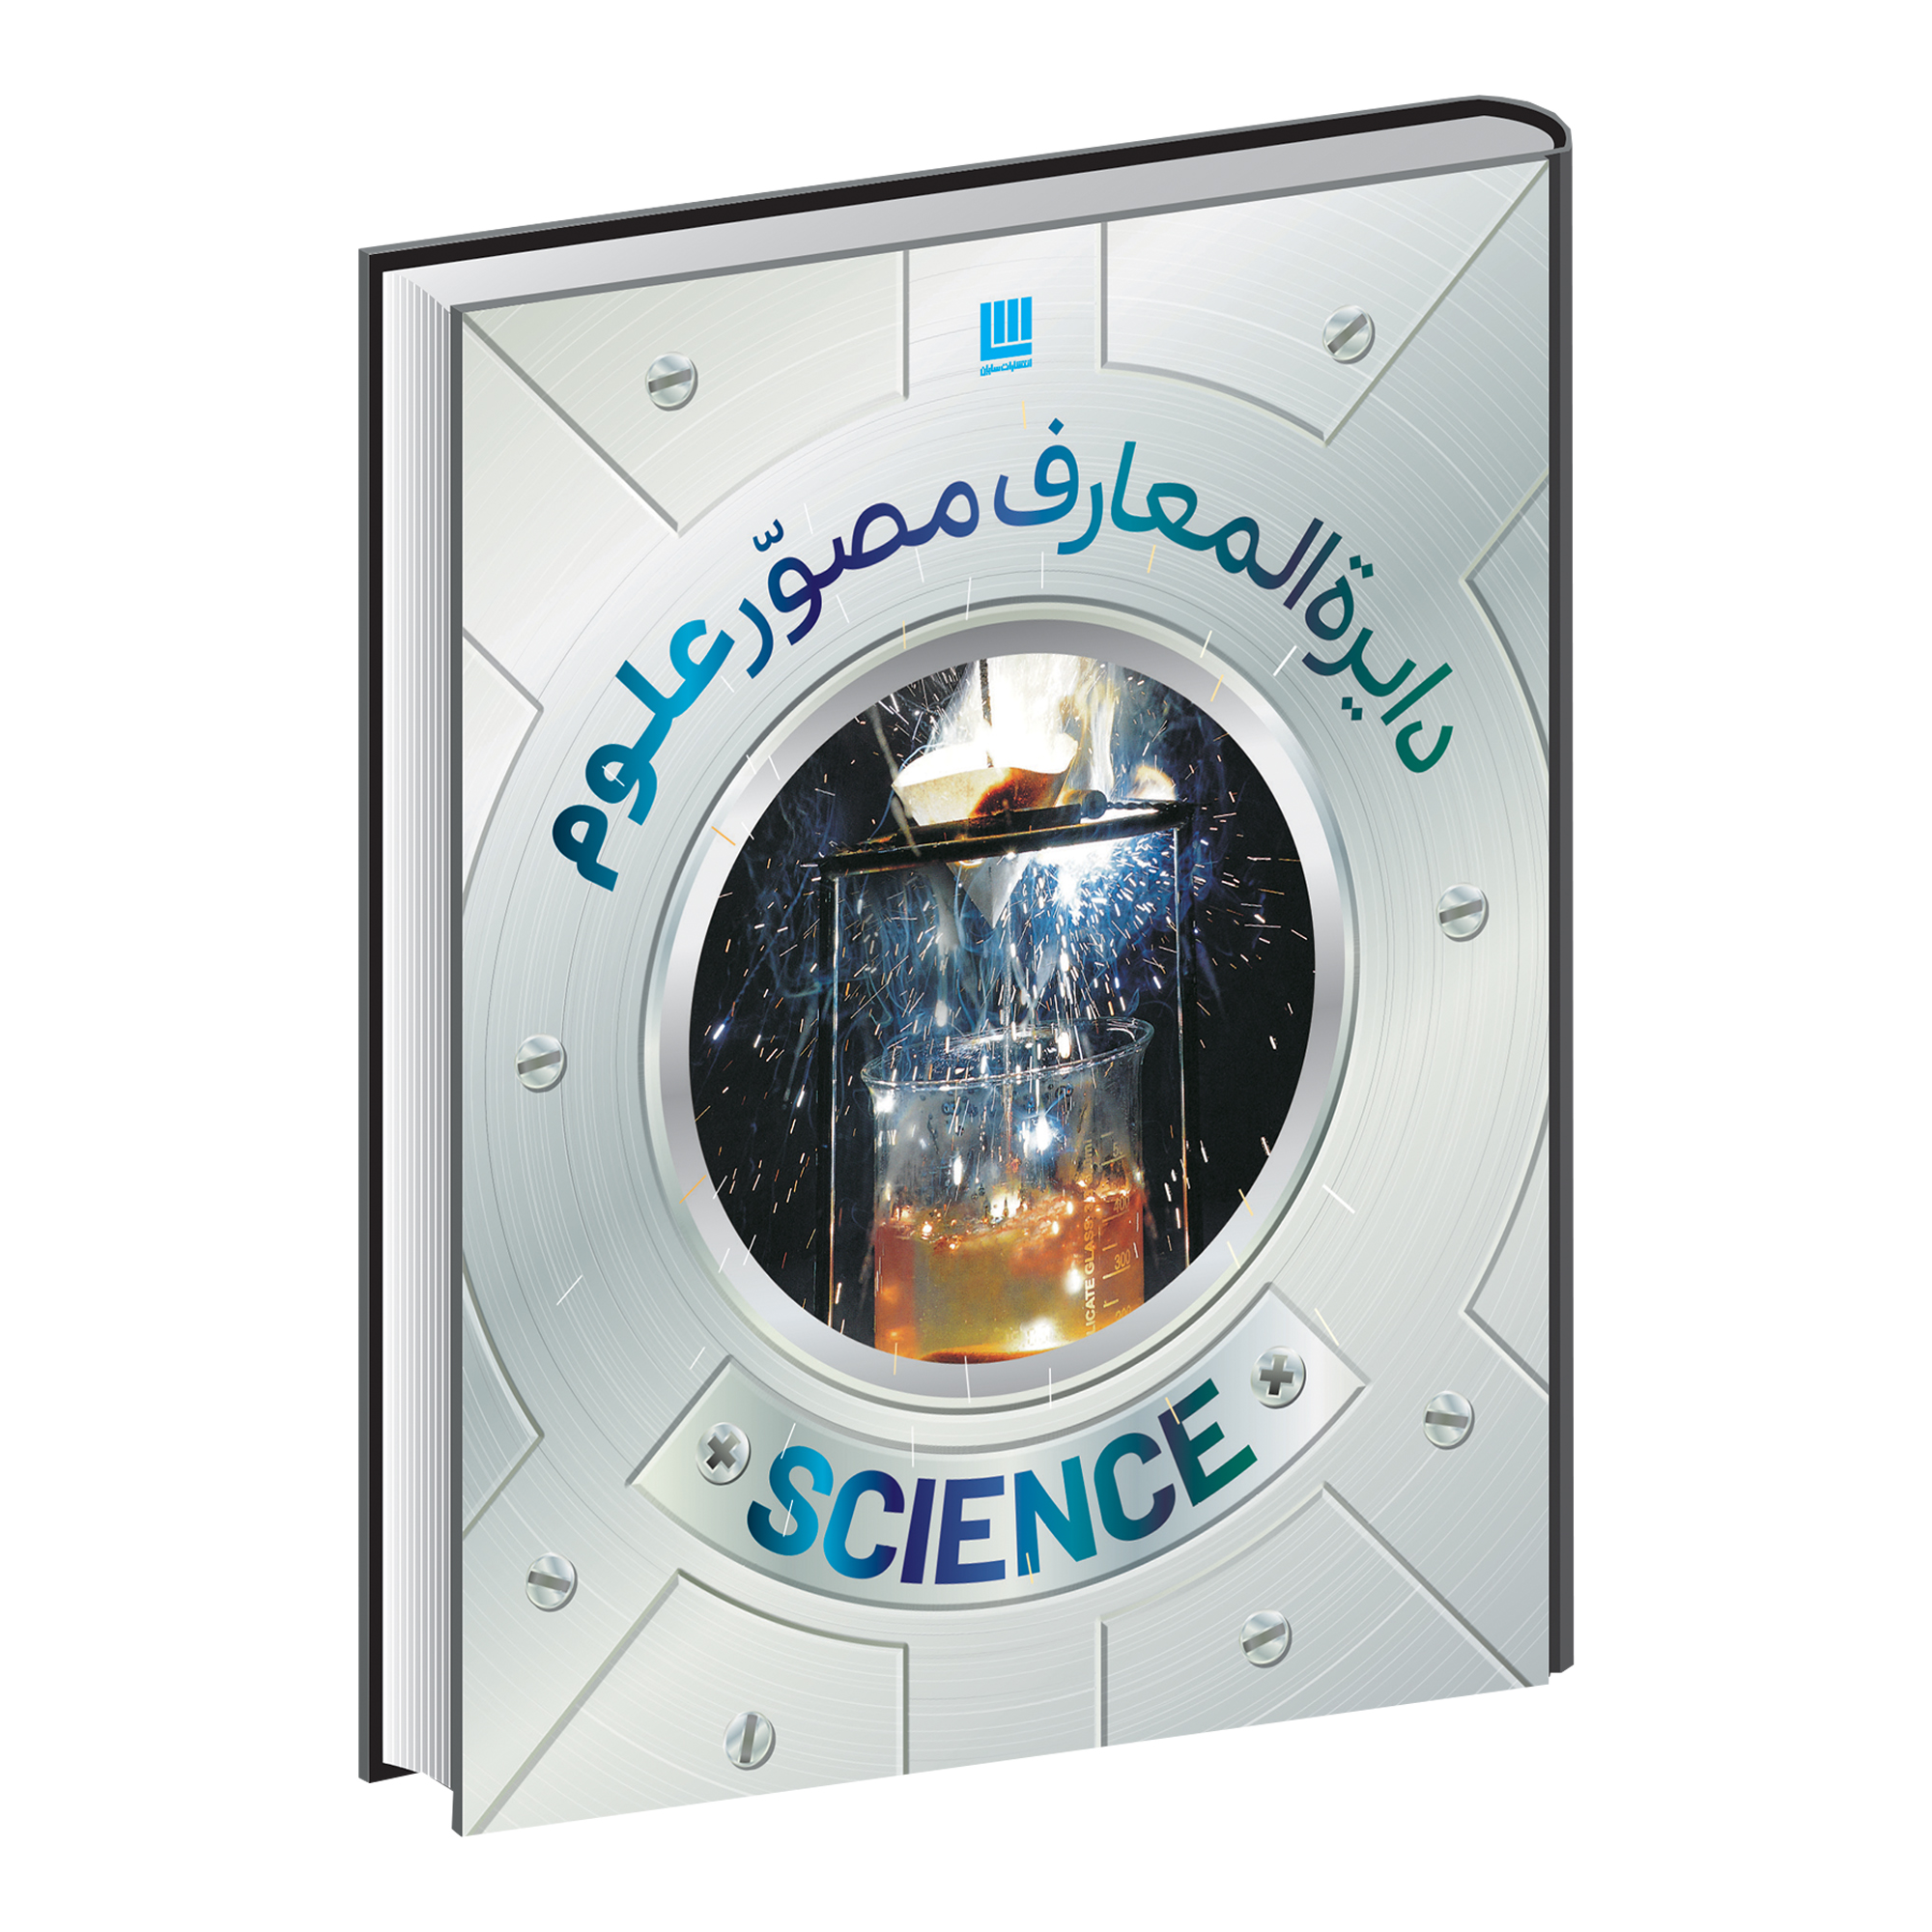 کتاب دایره المعارف مصور علوم اثر دورلینگ کیندرزلی نشر سایان